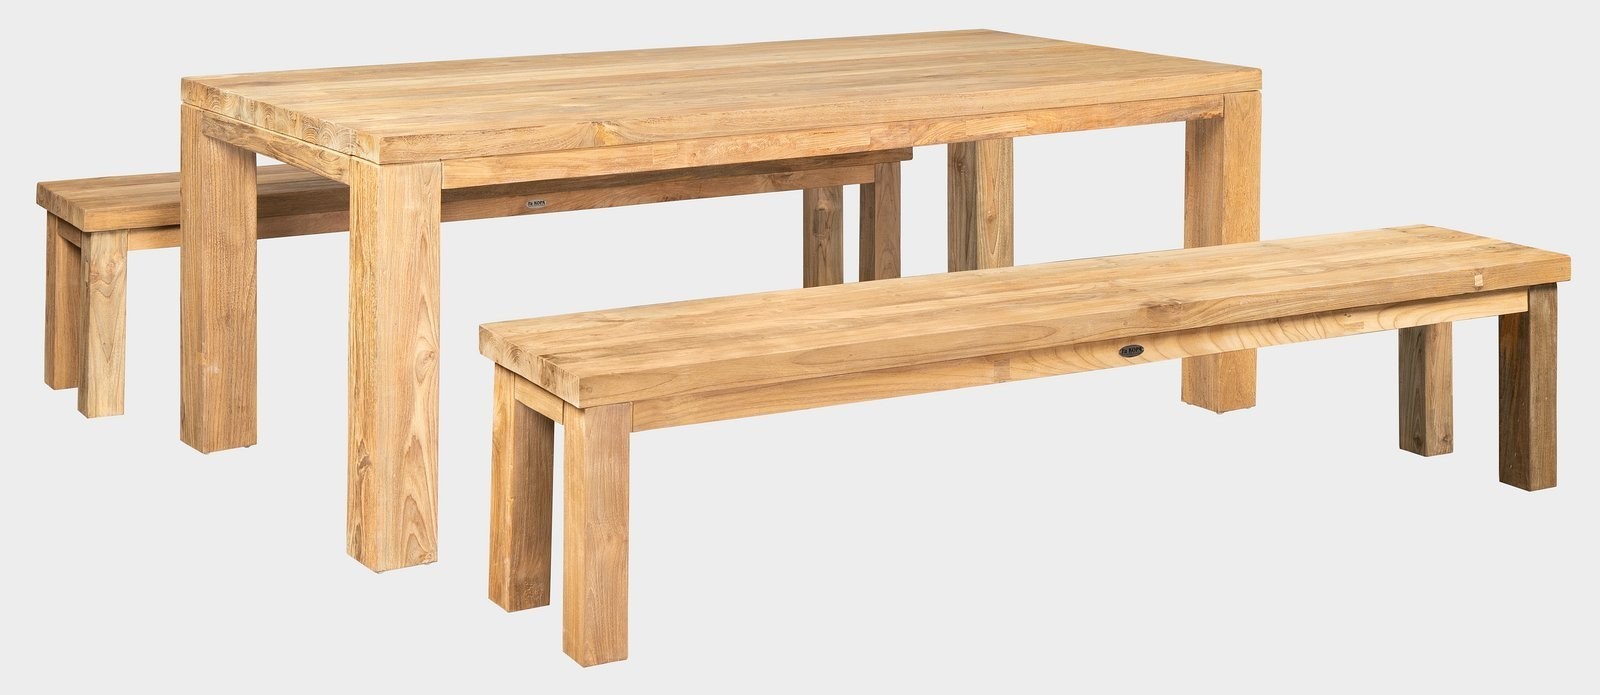 FaKOPA s. r. o. FLOSS RECYCLE - masivní stůl z recyklovaného teaku 180 x 90 cm (plná deska), teak